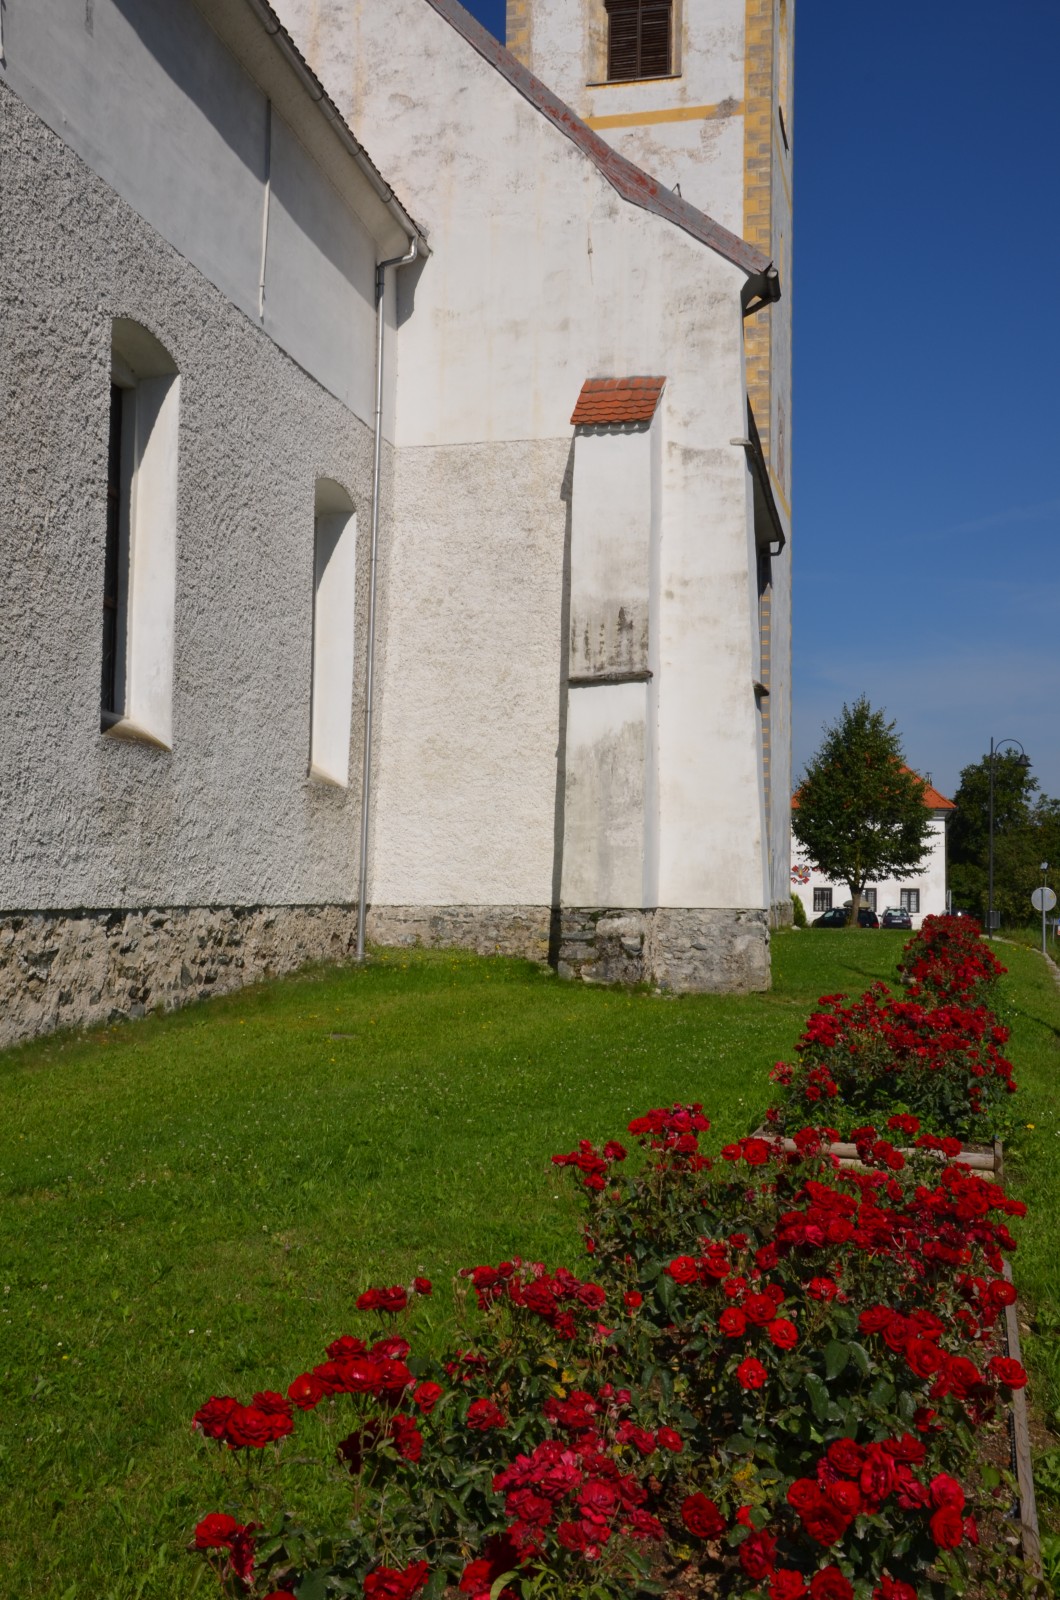 Avenija vrtnic pri farni cerkvi v Dravogradu